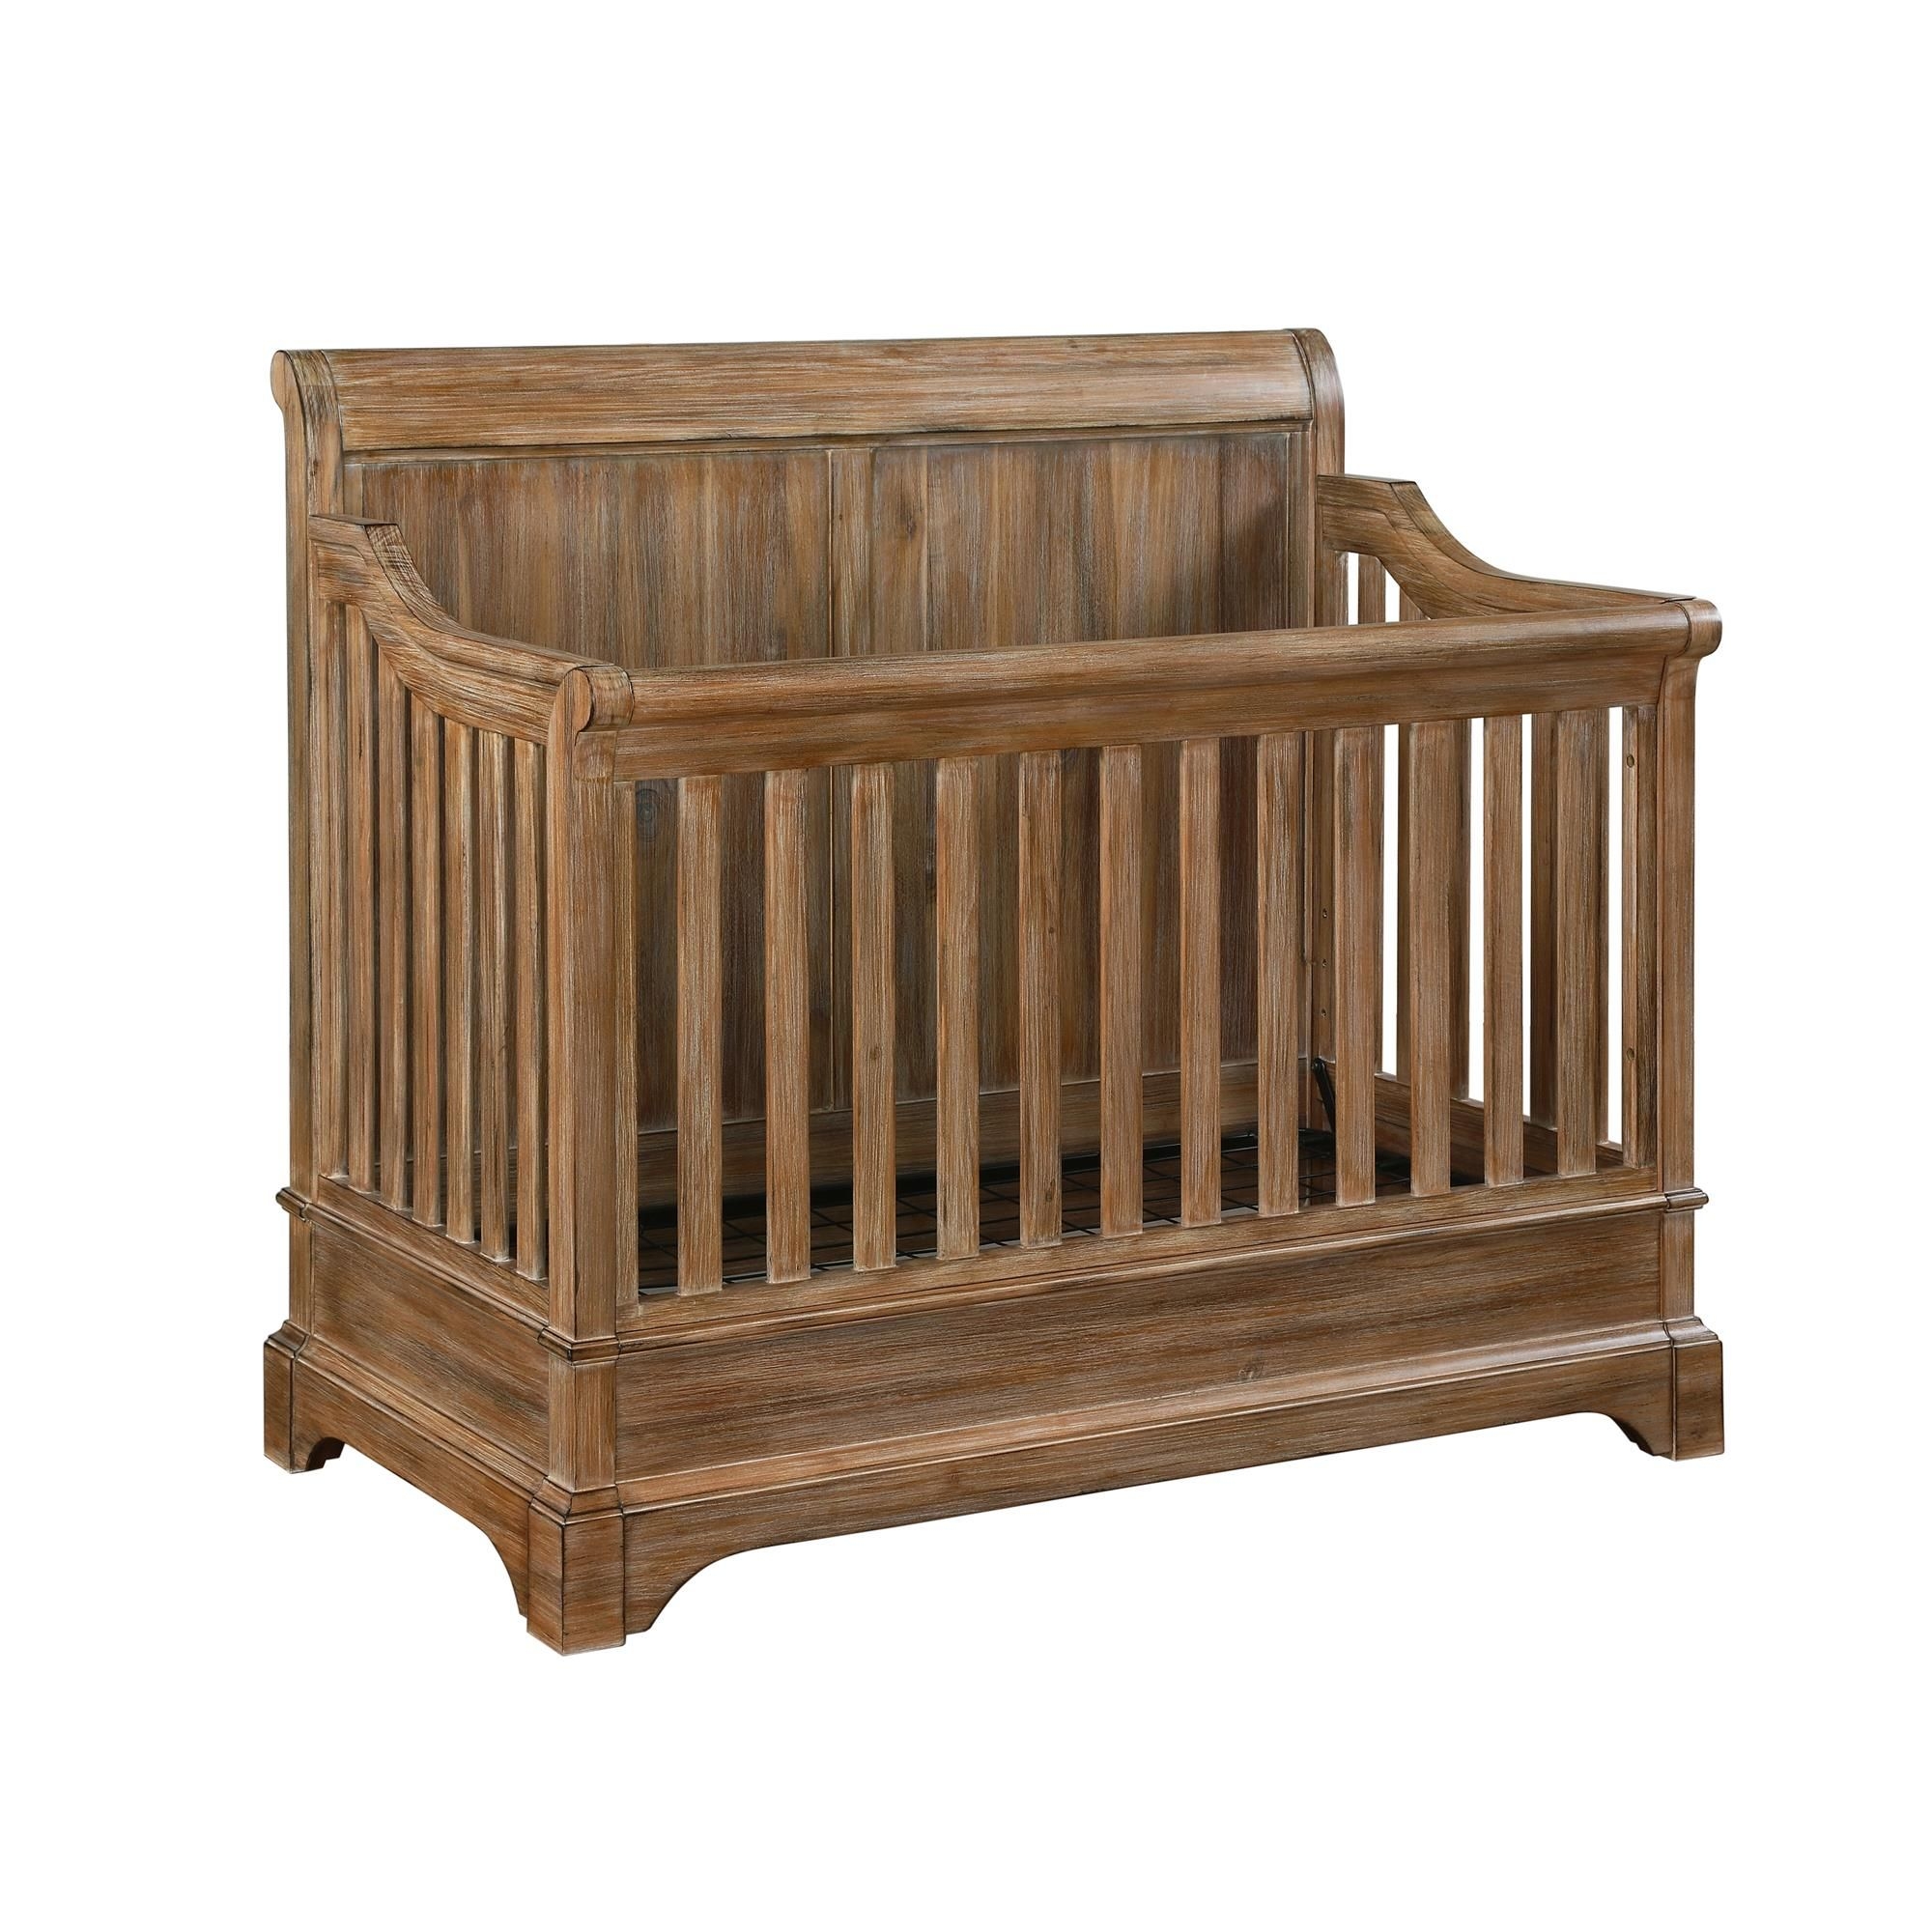 Natural wood baby cribs